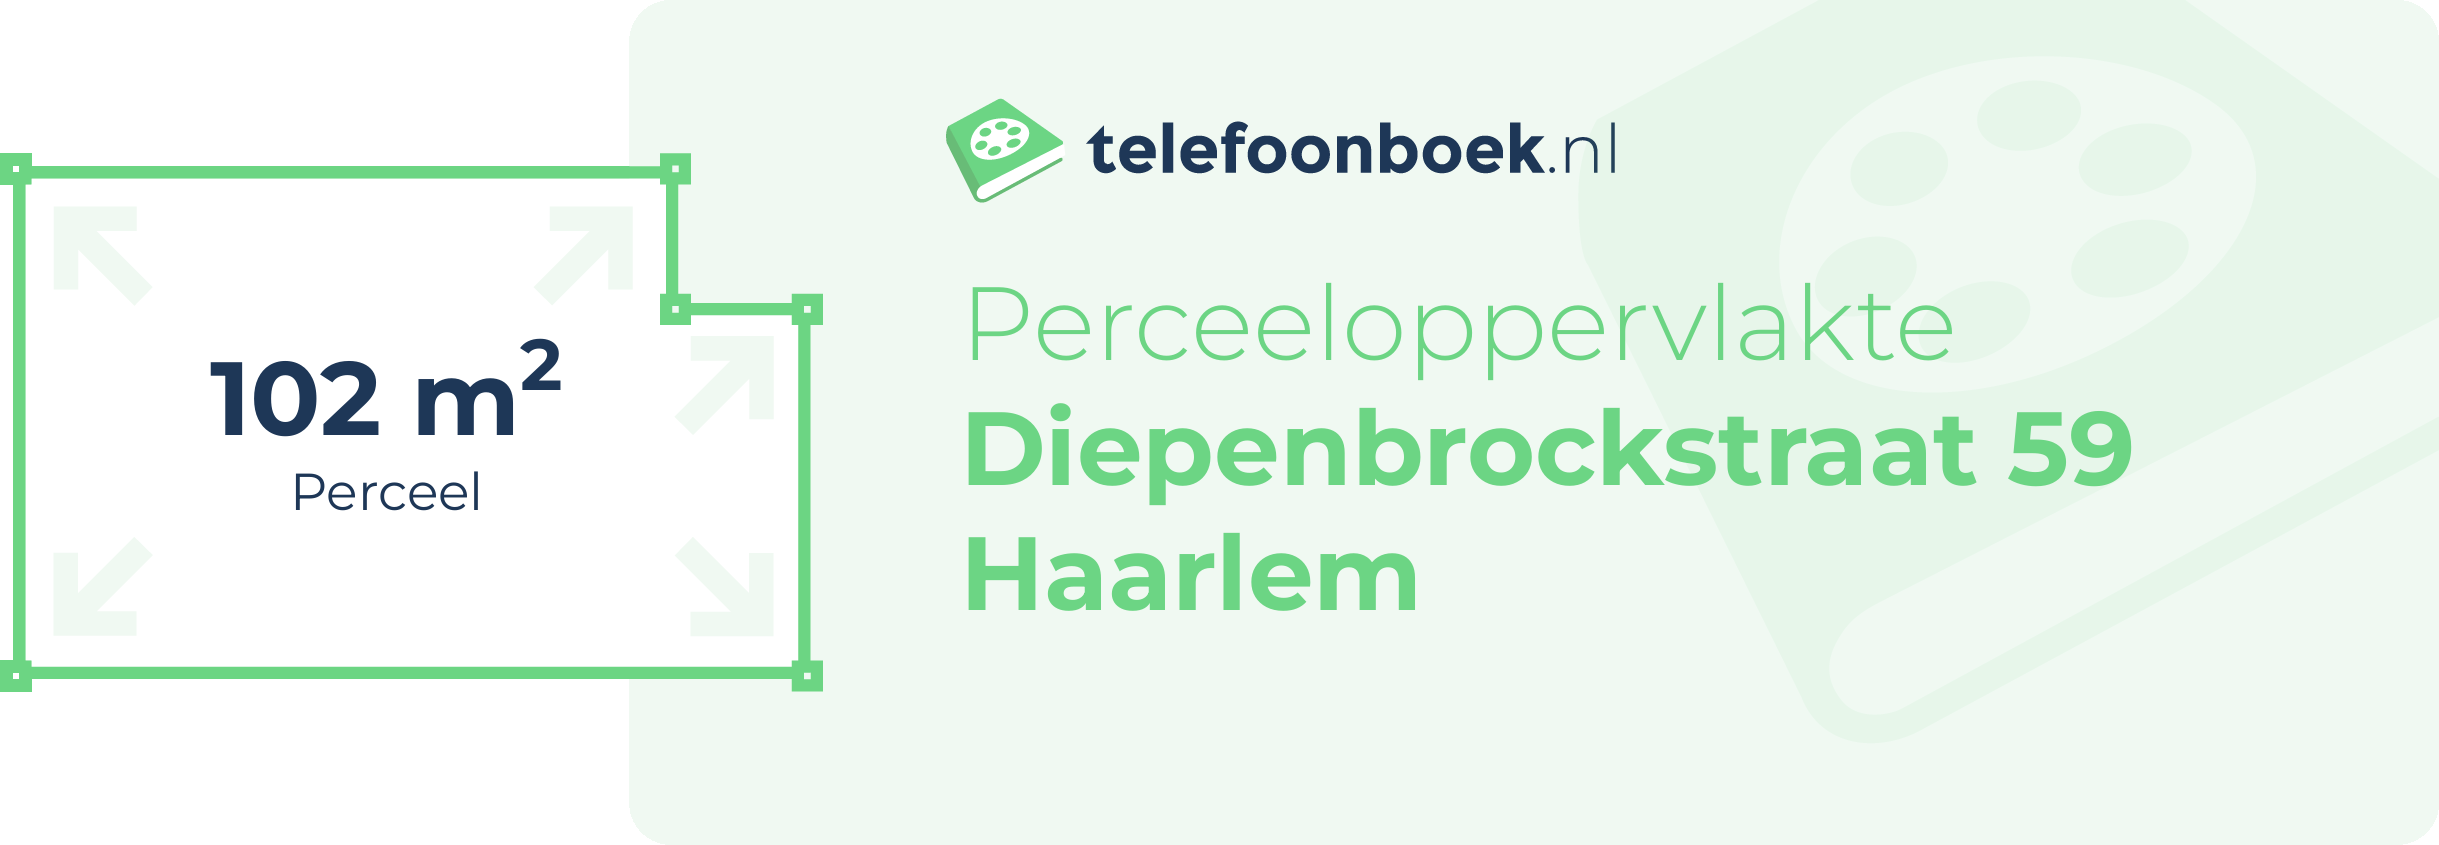 Perceeloppervlakte Diepenbrockstraat 59 Haarlem